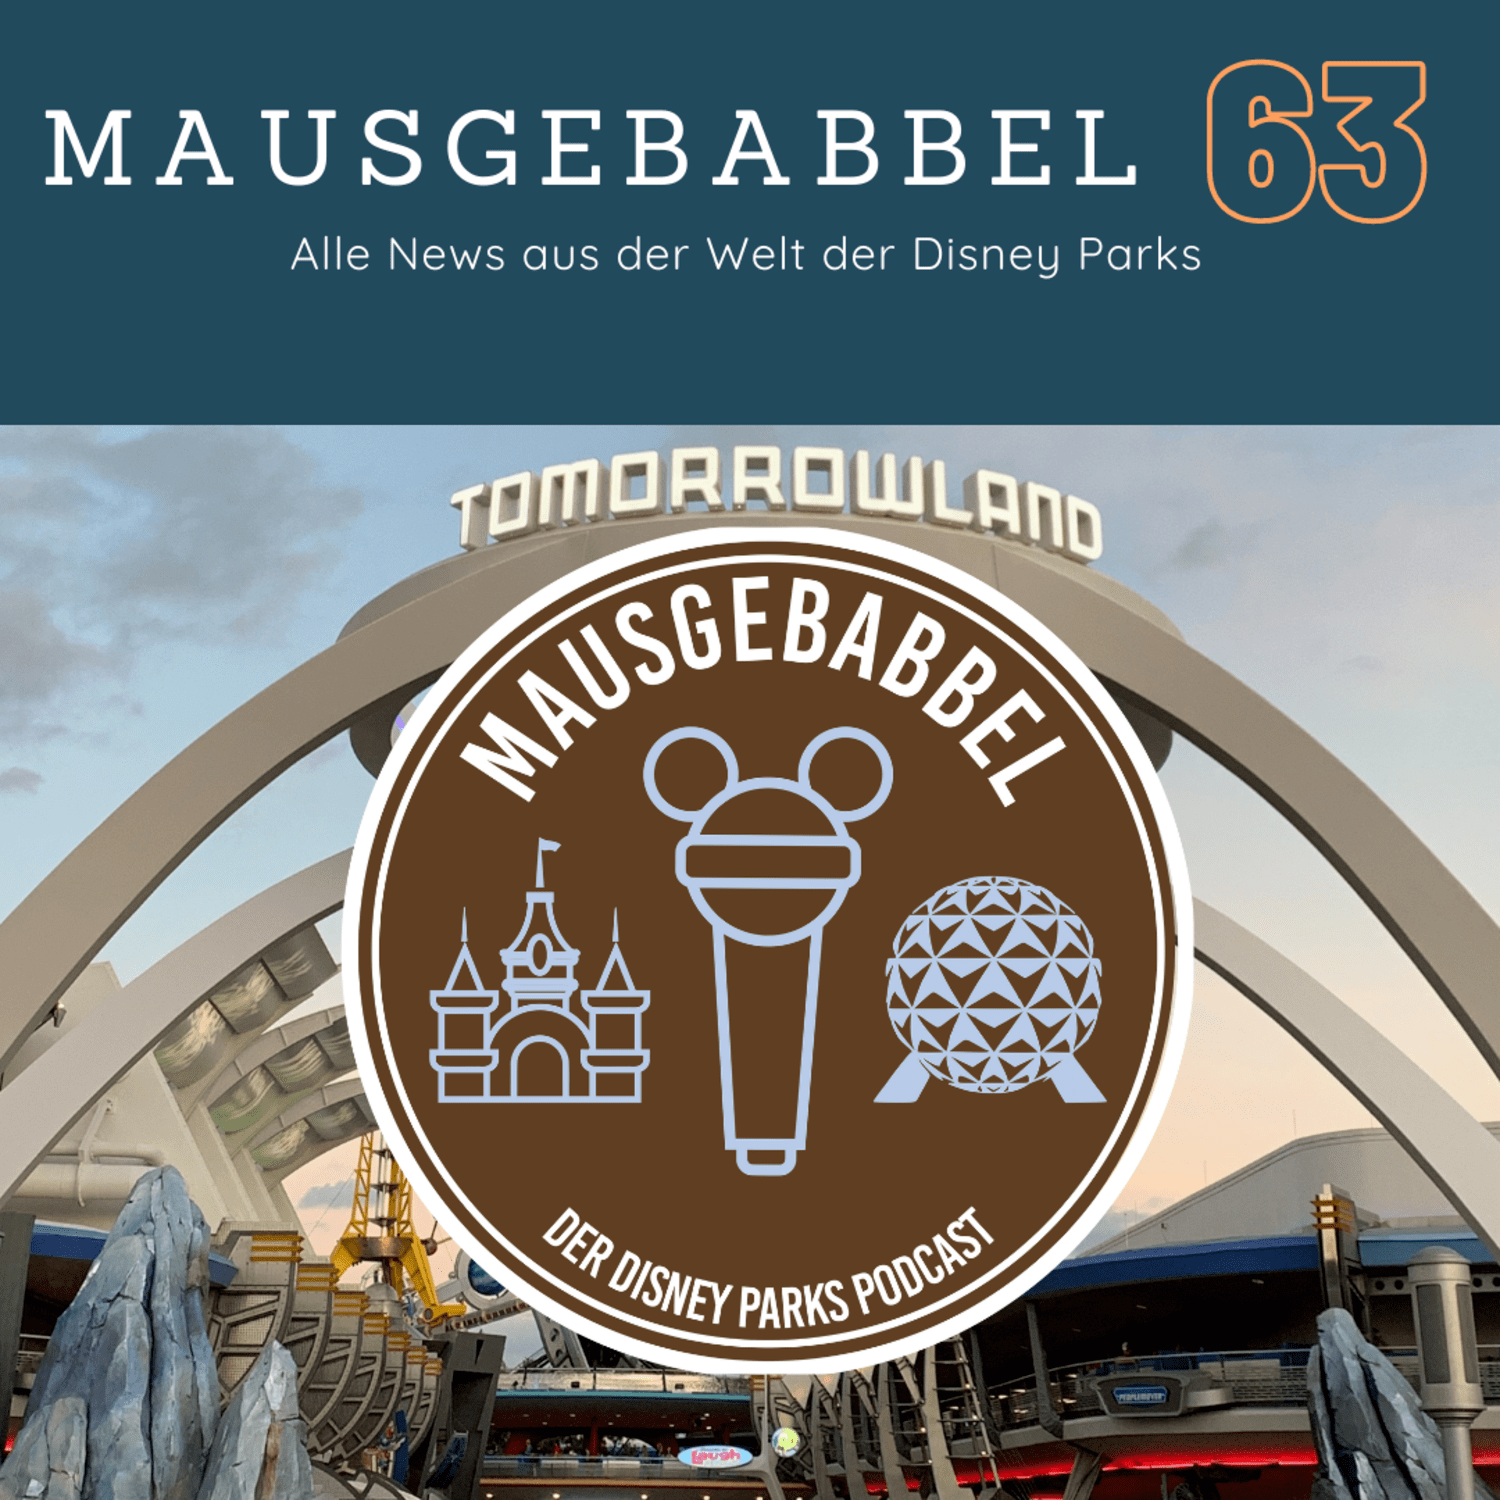 Mausgebabbel 63 - Die spannendsten Neuigkeiten aus Disneyland Paris und Co. 2